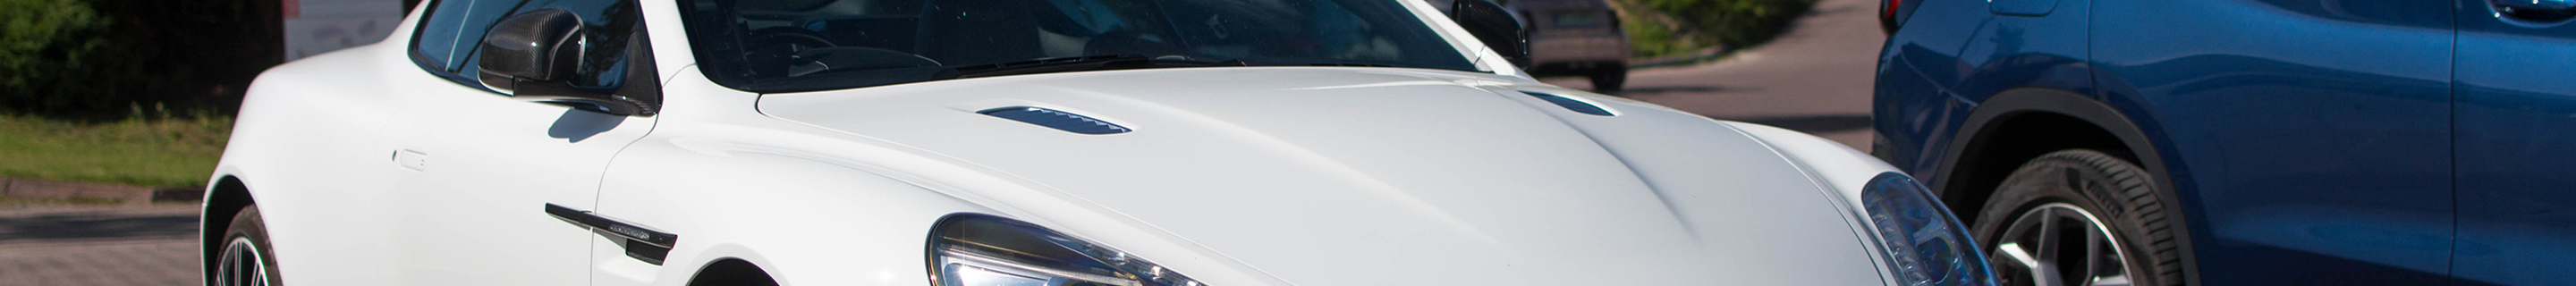 Aston Martin DB9 2015 Carbon White Edition